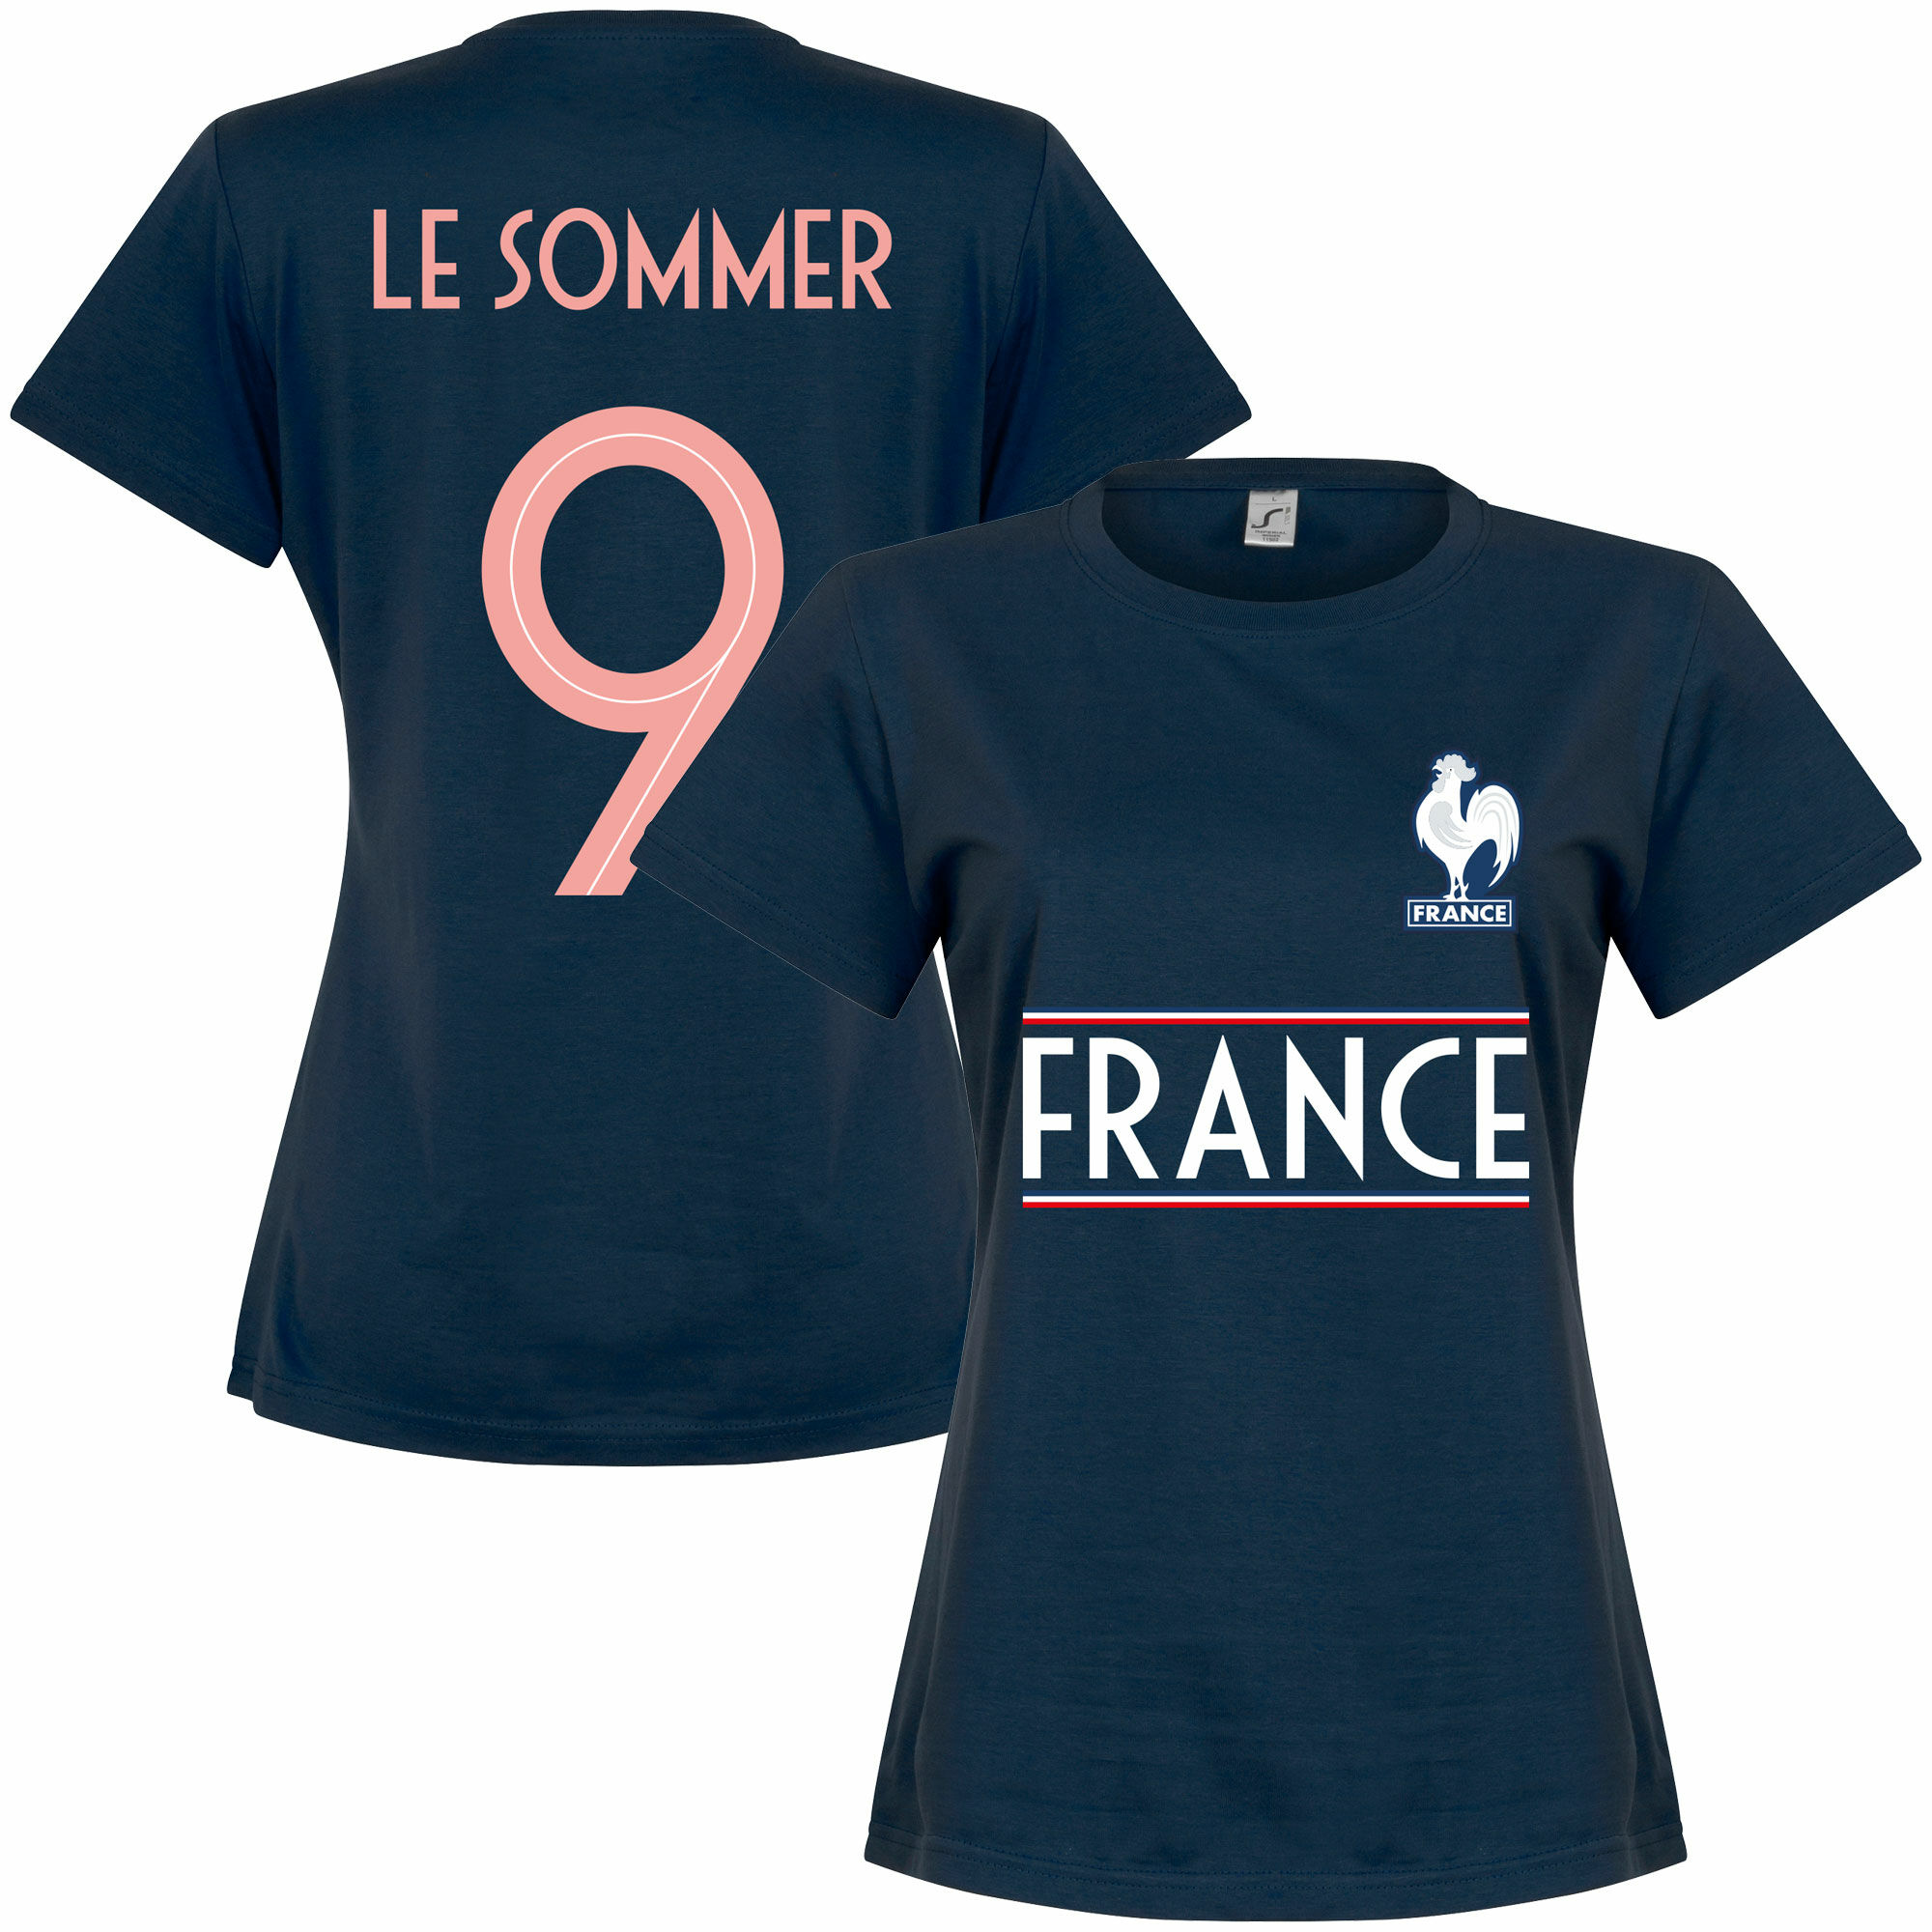 Francie - Tričko dámské - Eugénie Le Sommer, číslo 9, modré